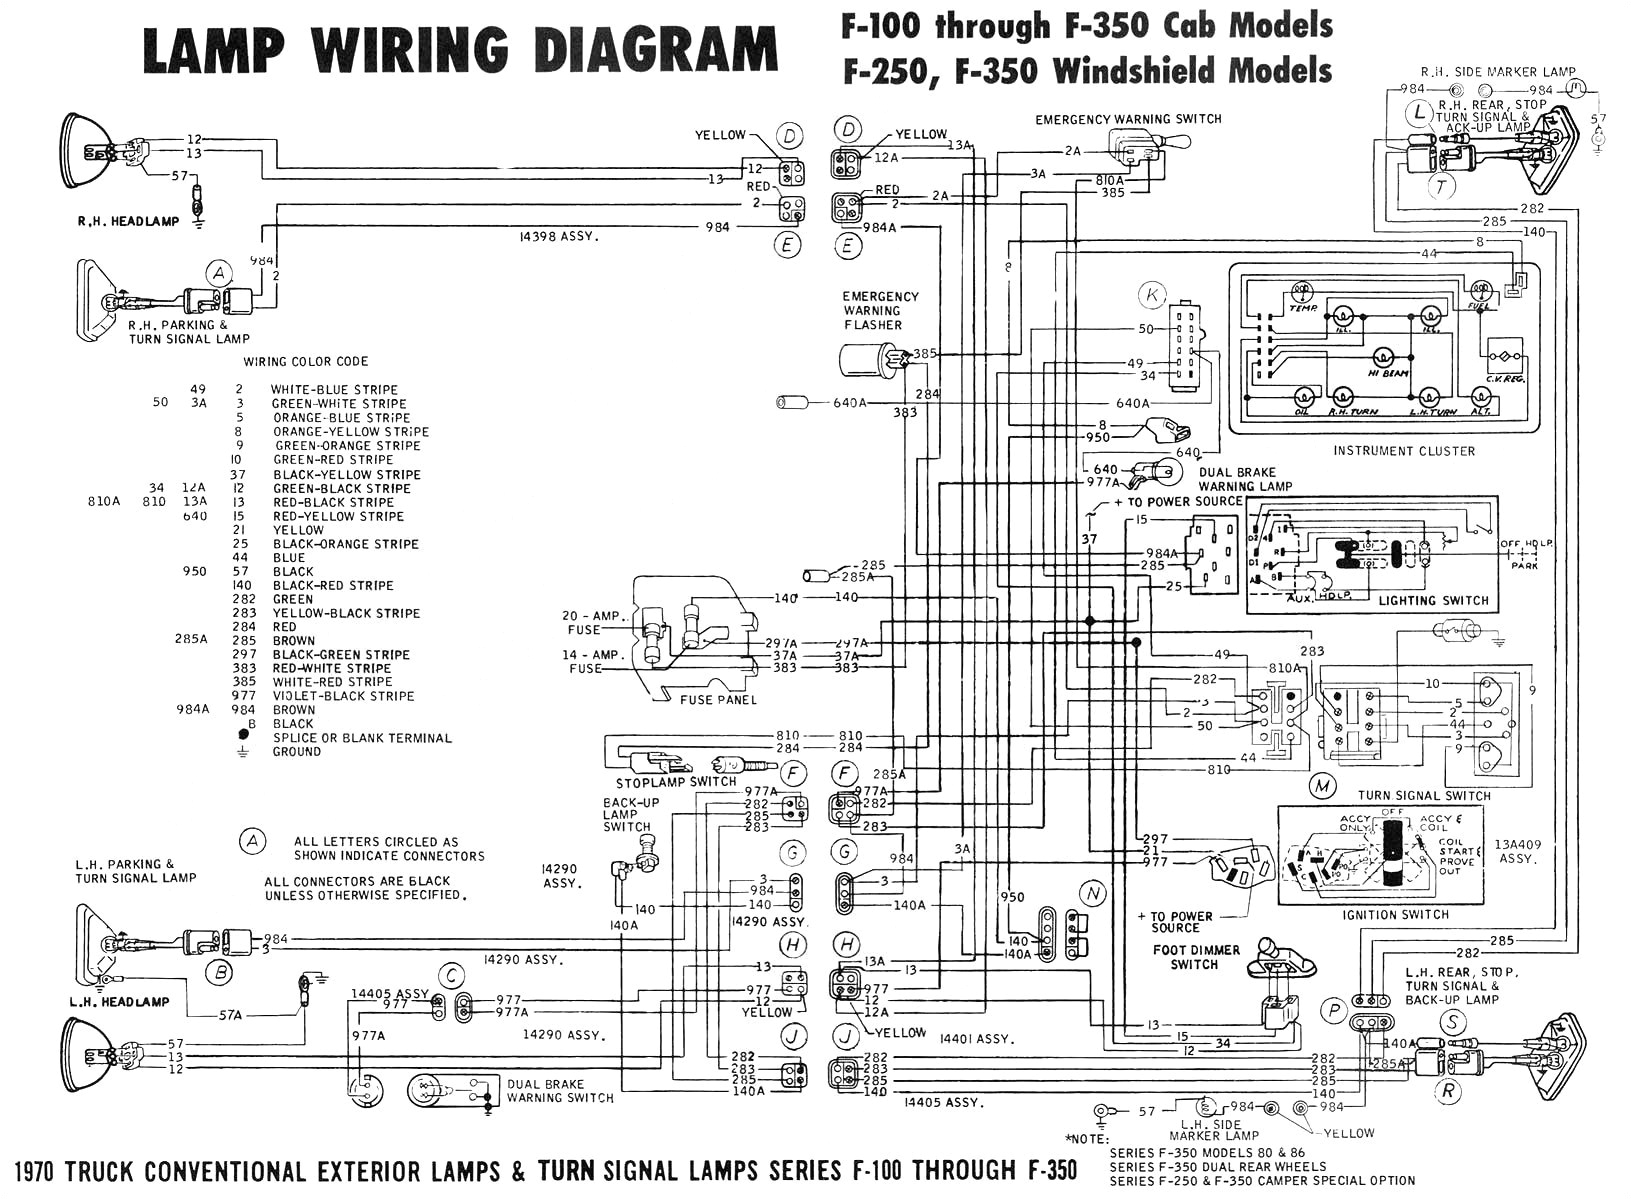 schematic wiring diagram ach 800 schema diagram database ach wiring diagram model 8